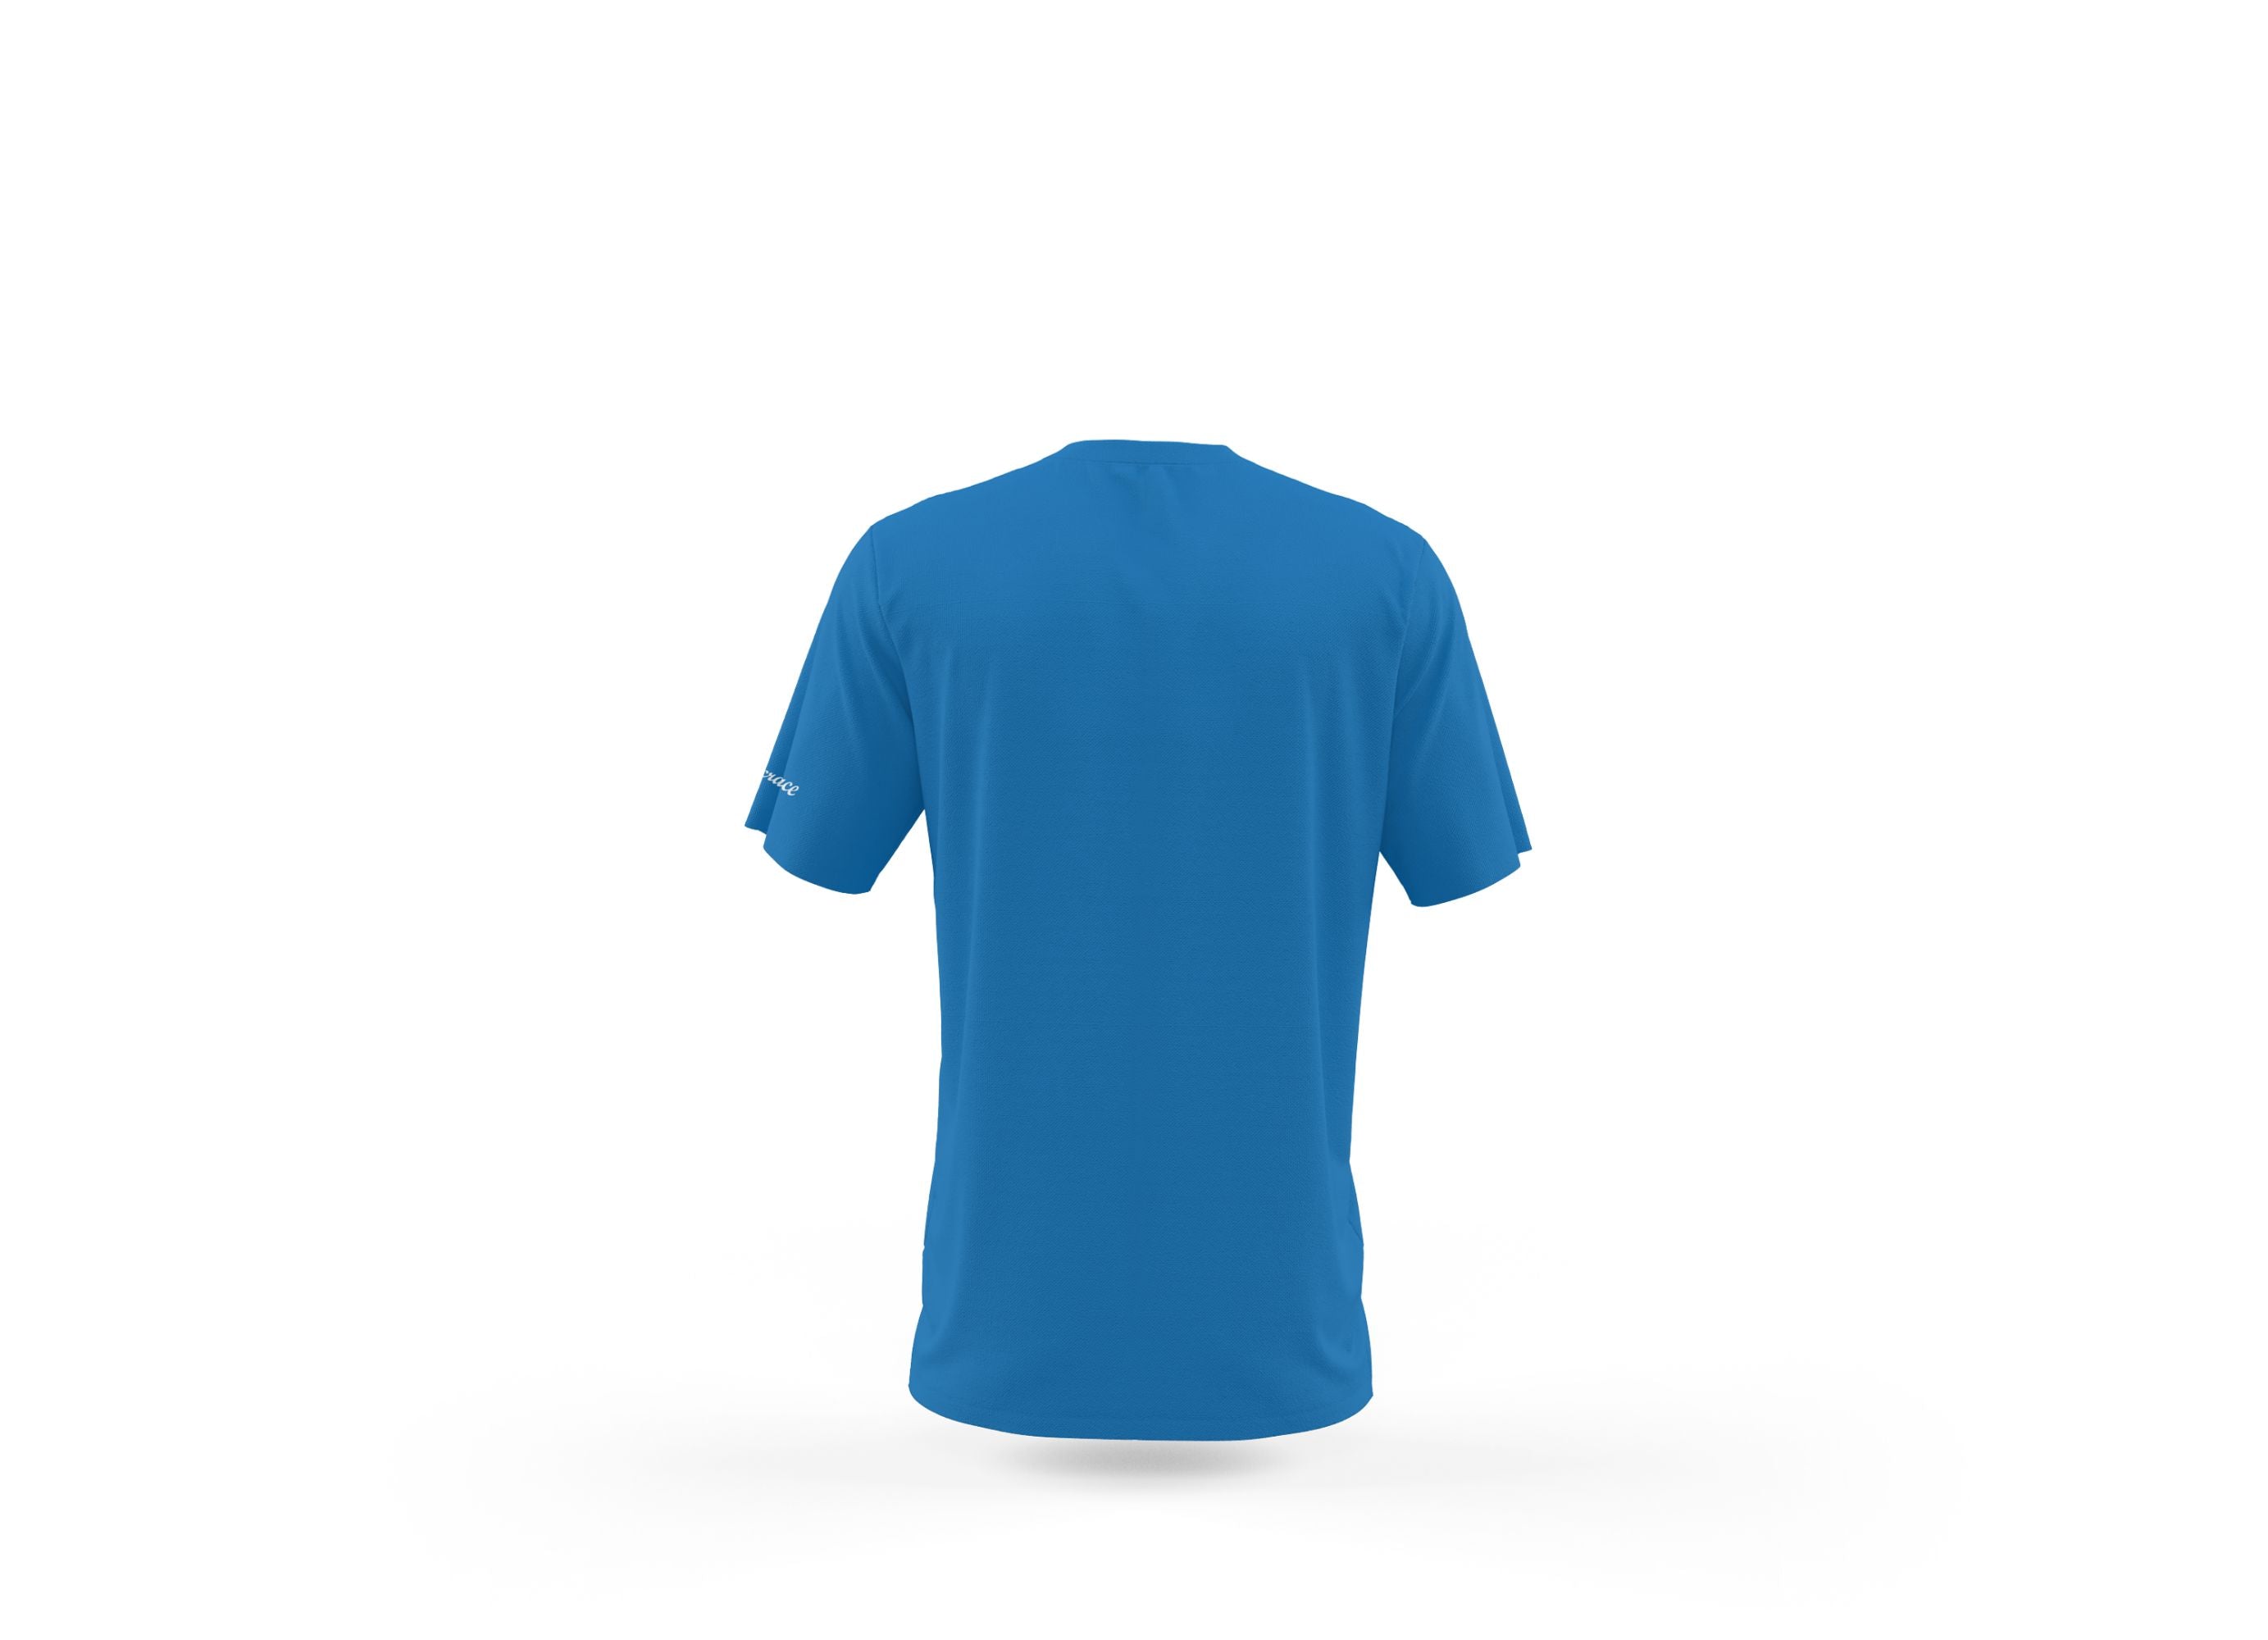 Ethicrace Cursive Logo Shirt for Men (Ethic Blue)